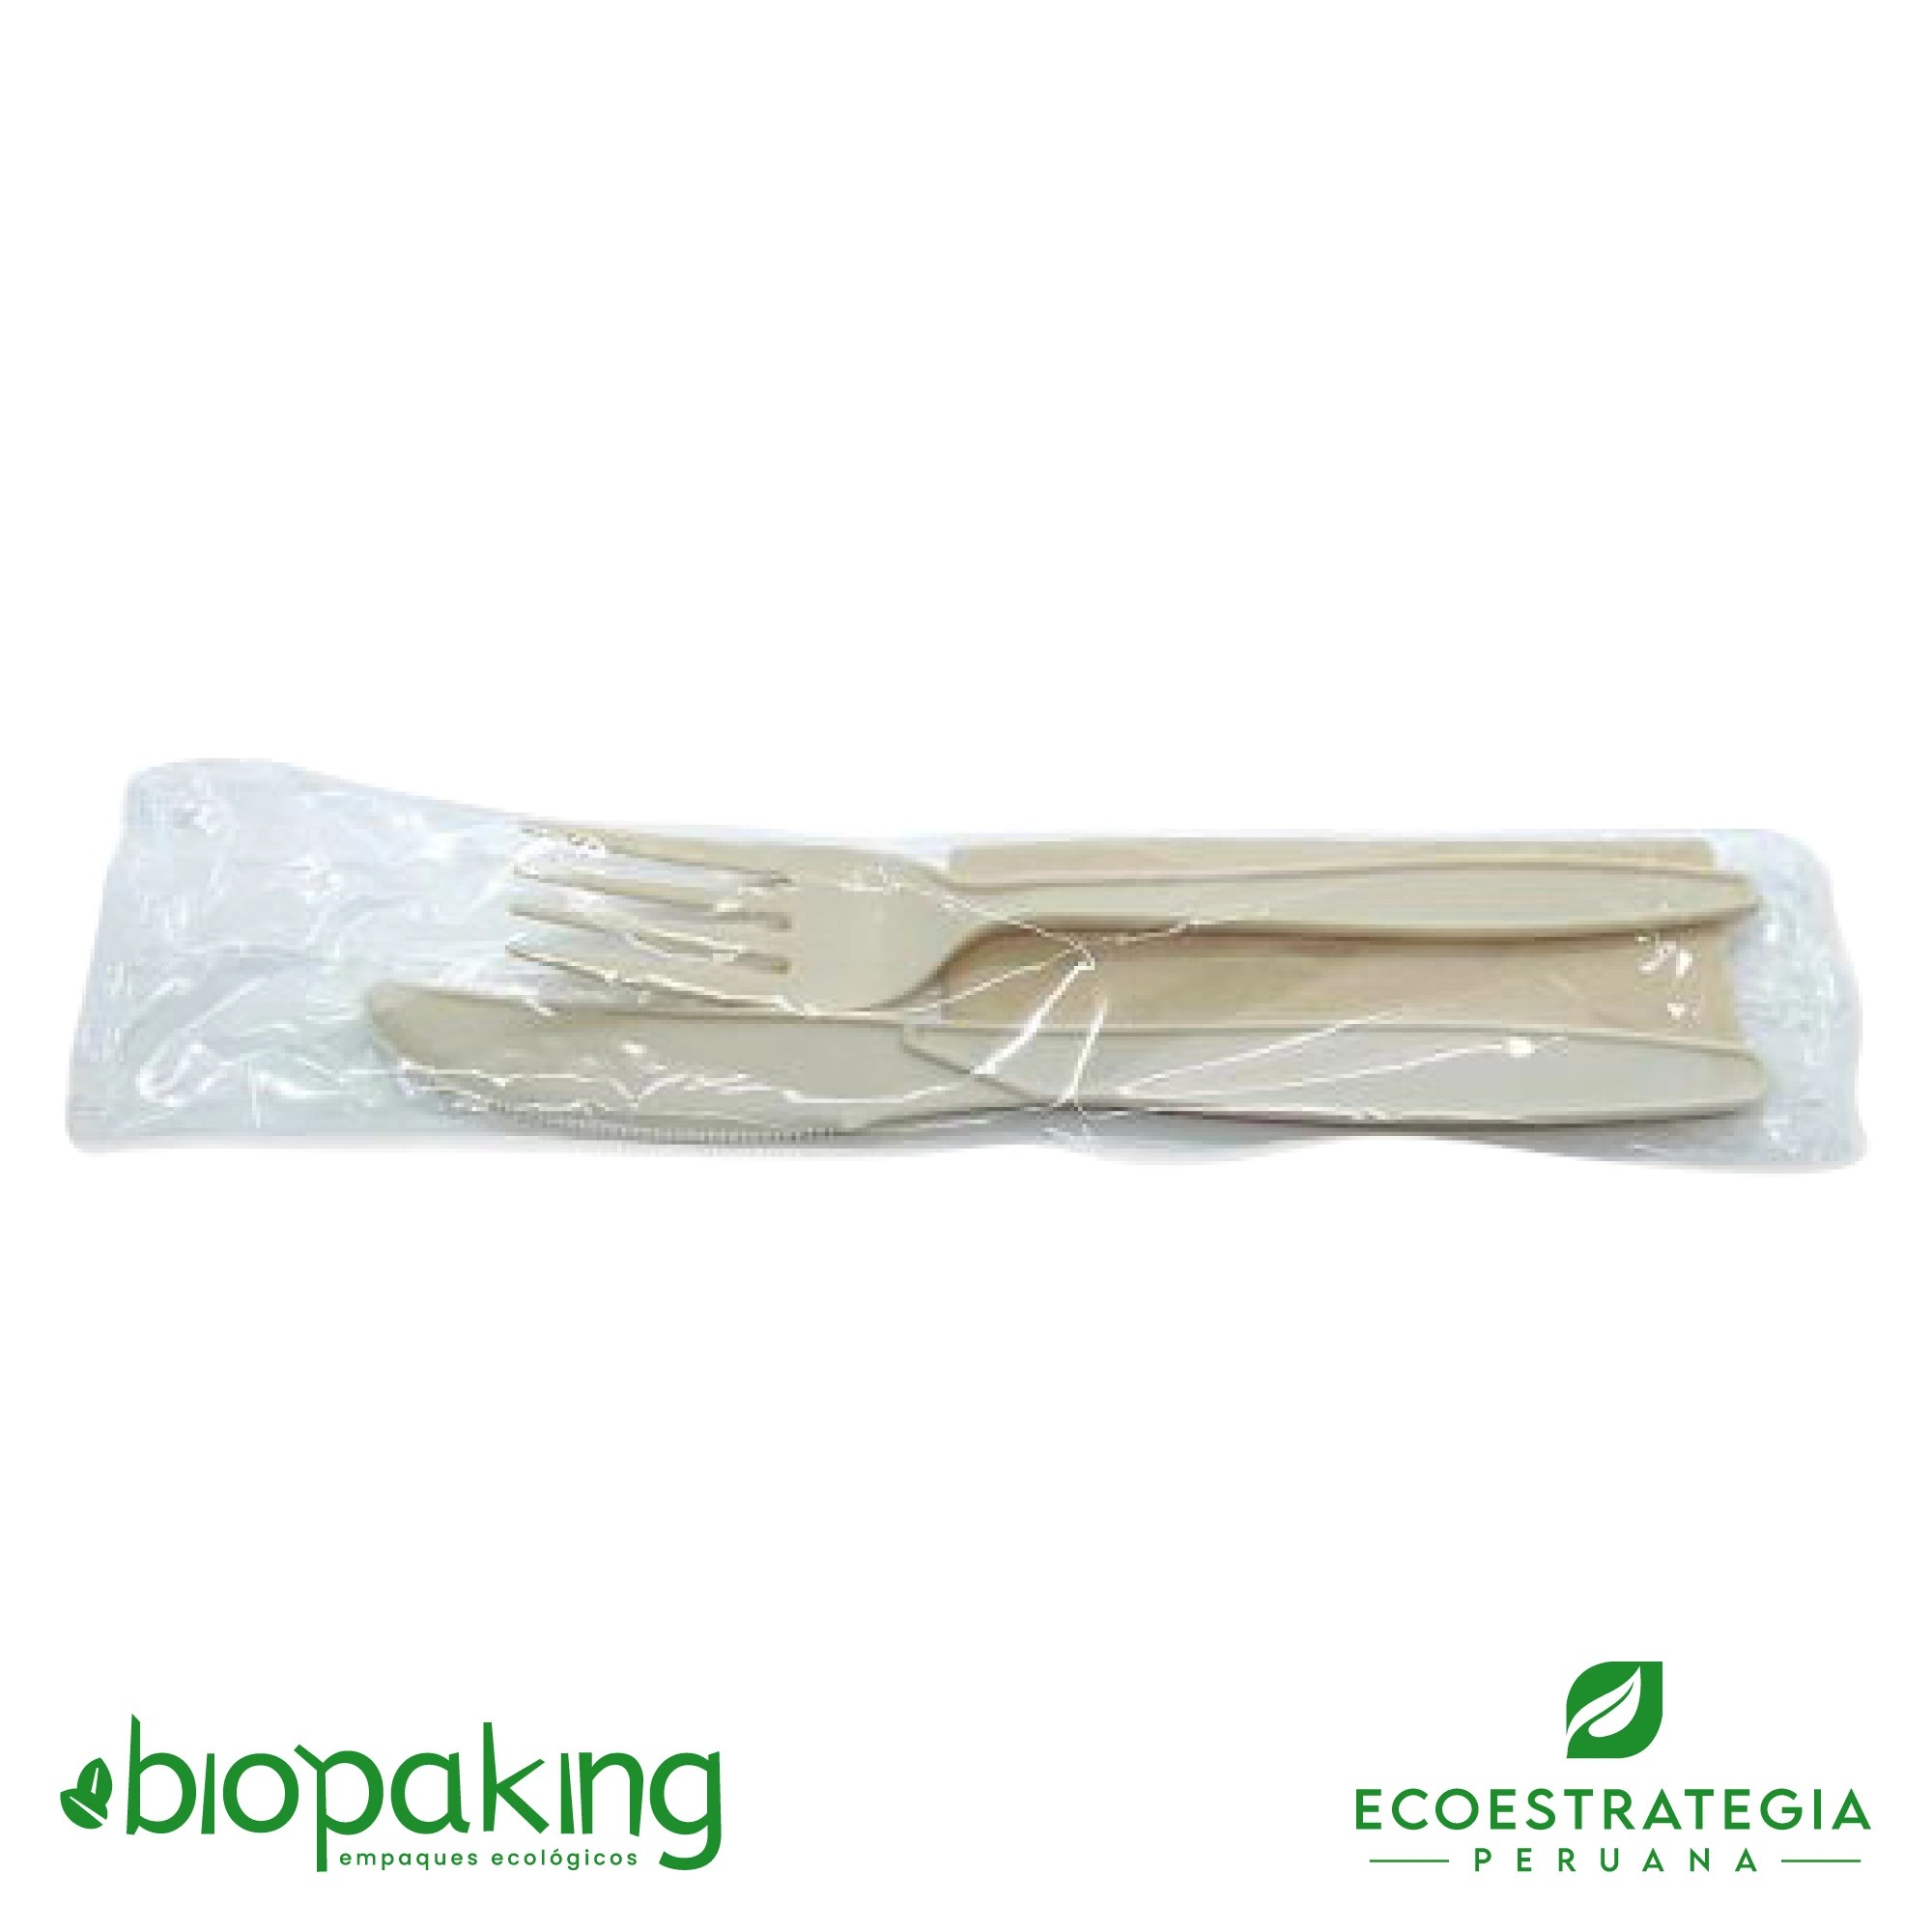 Empaque de tenedor biodegradable de fecula de maiz con servilleta, EP-CS. Cotiza ahora tus empaques de cubiertos biodegradables más servilleta al mejor precio en Perú.